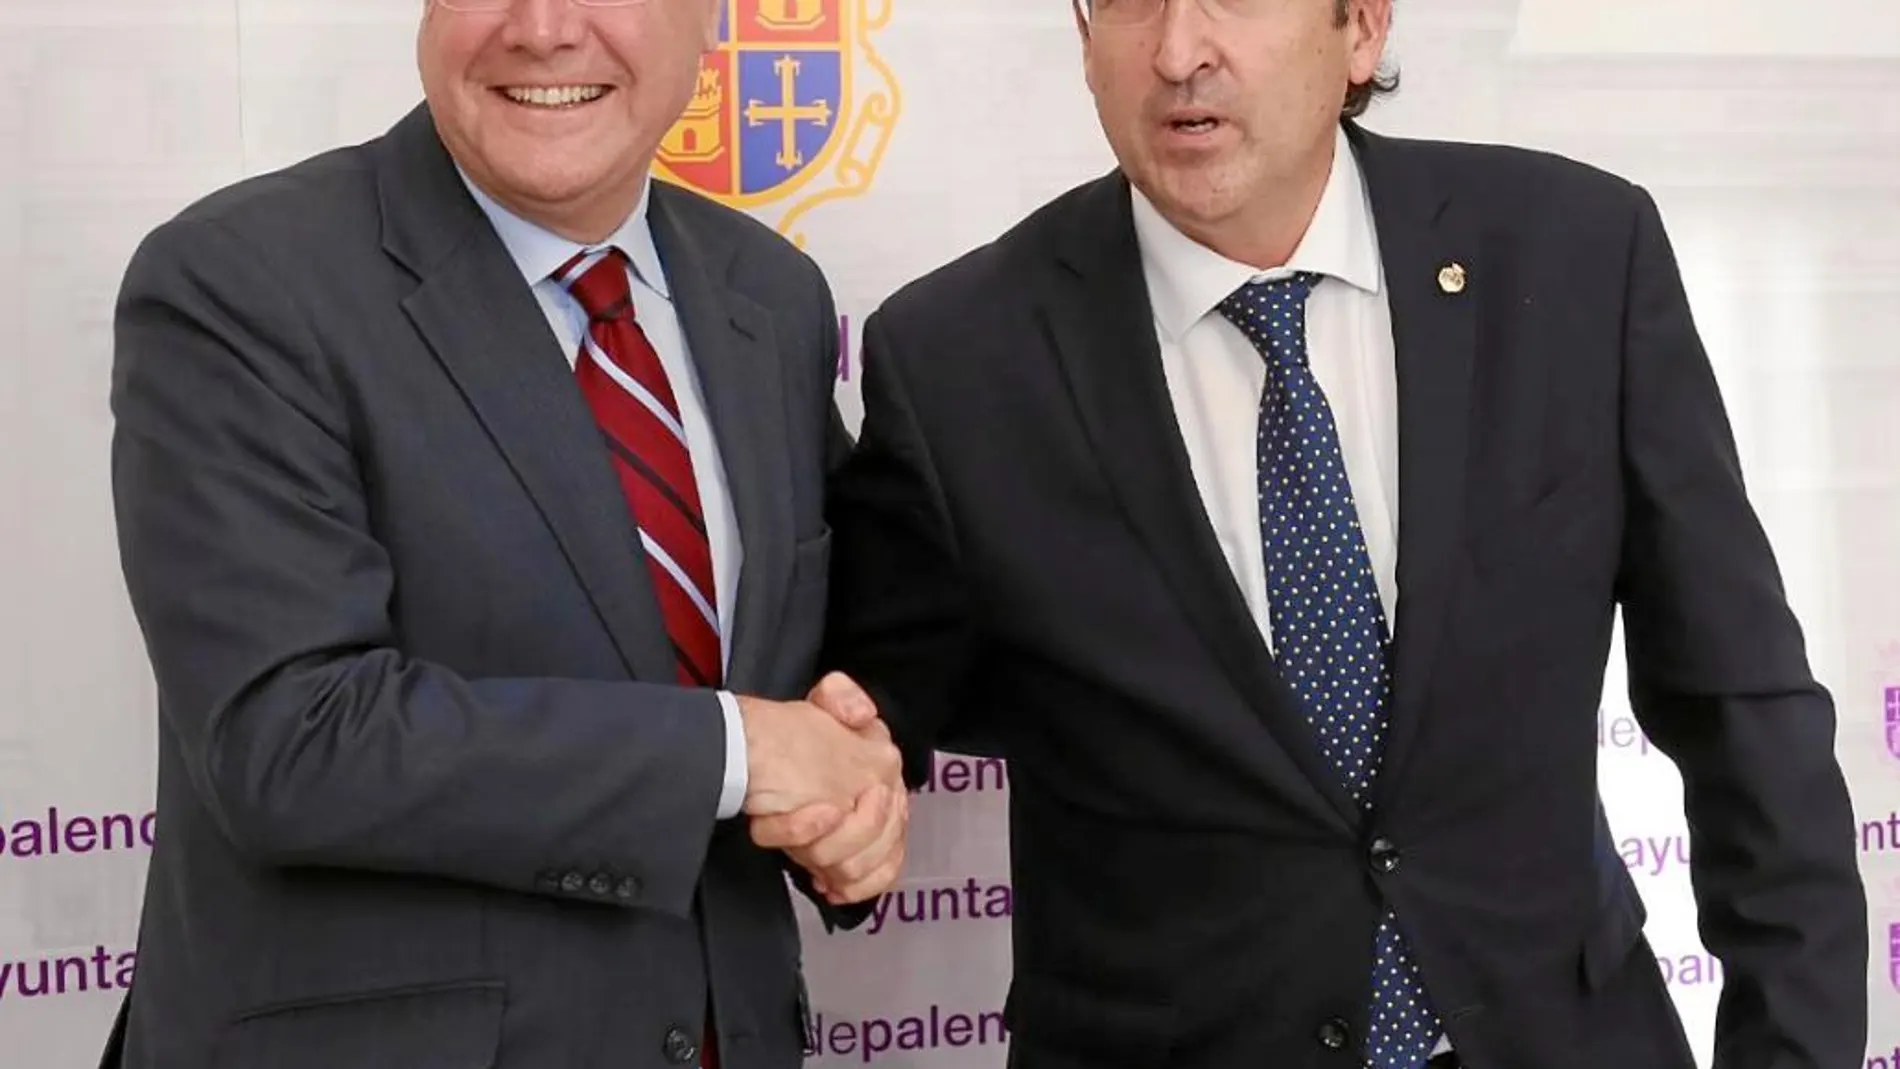 Los alcaldes Antonio Silván y Antonio Polanco estrechan sus manos